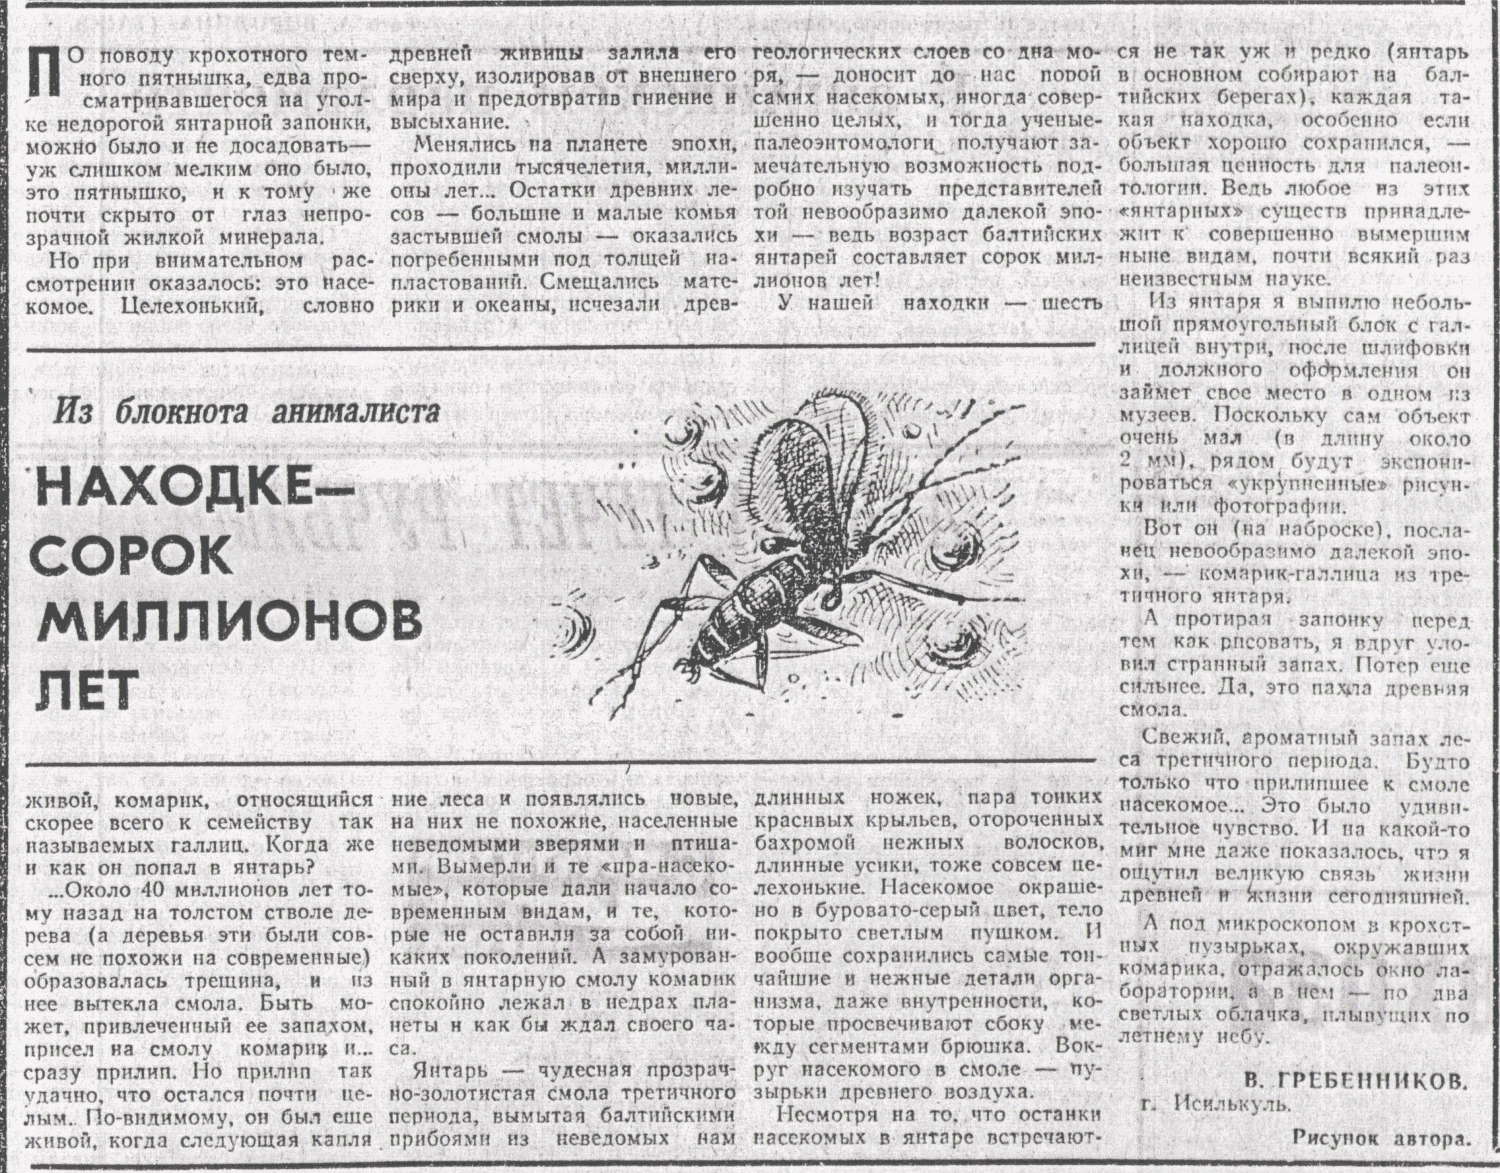 Находке - сорок миллионов лет. В.С. Гребенников. Омская правда, 12.07.1975.